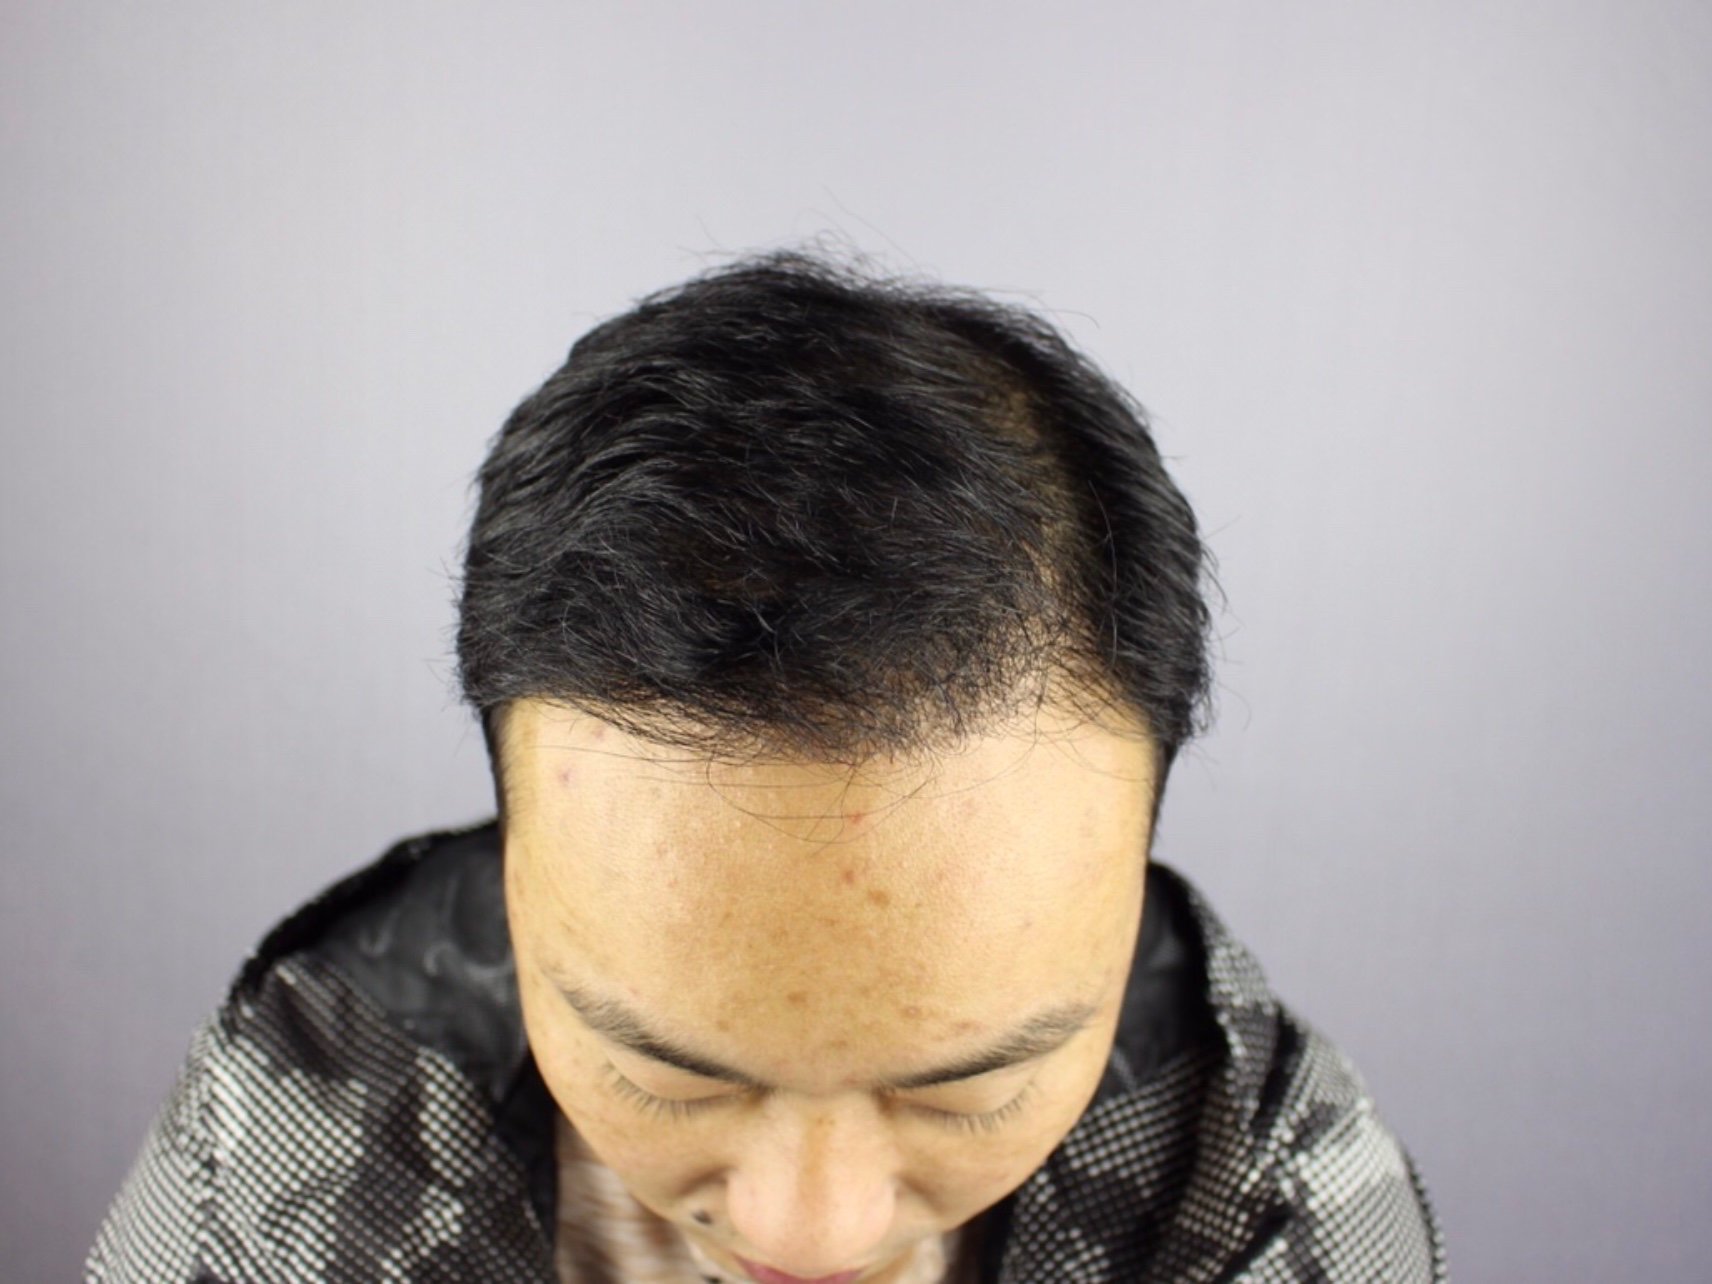 斑秃,俗称鬼剃头, 是一种比较特殊的脱发,患者头